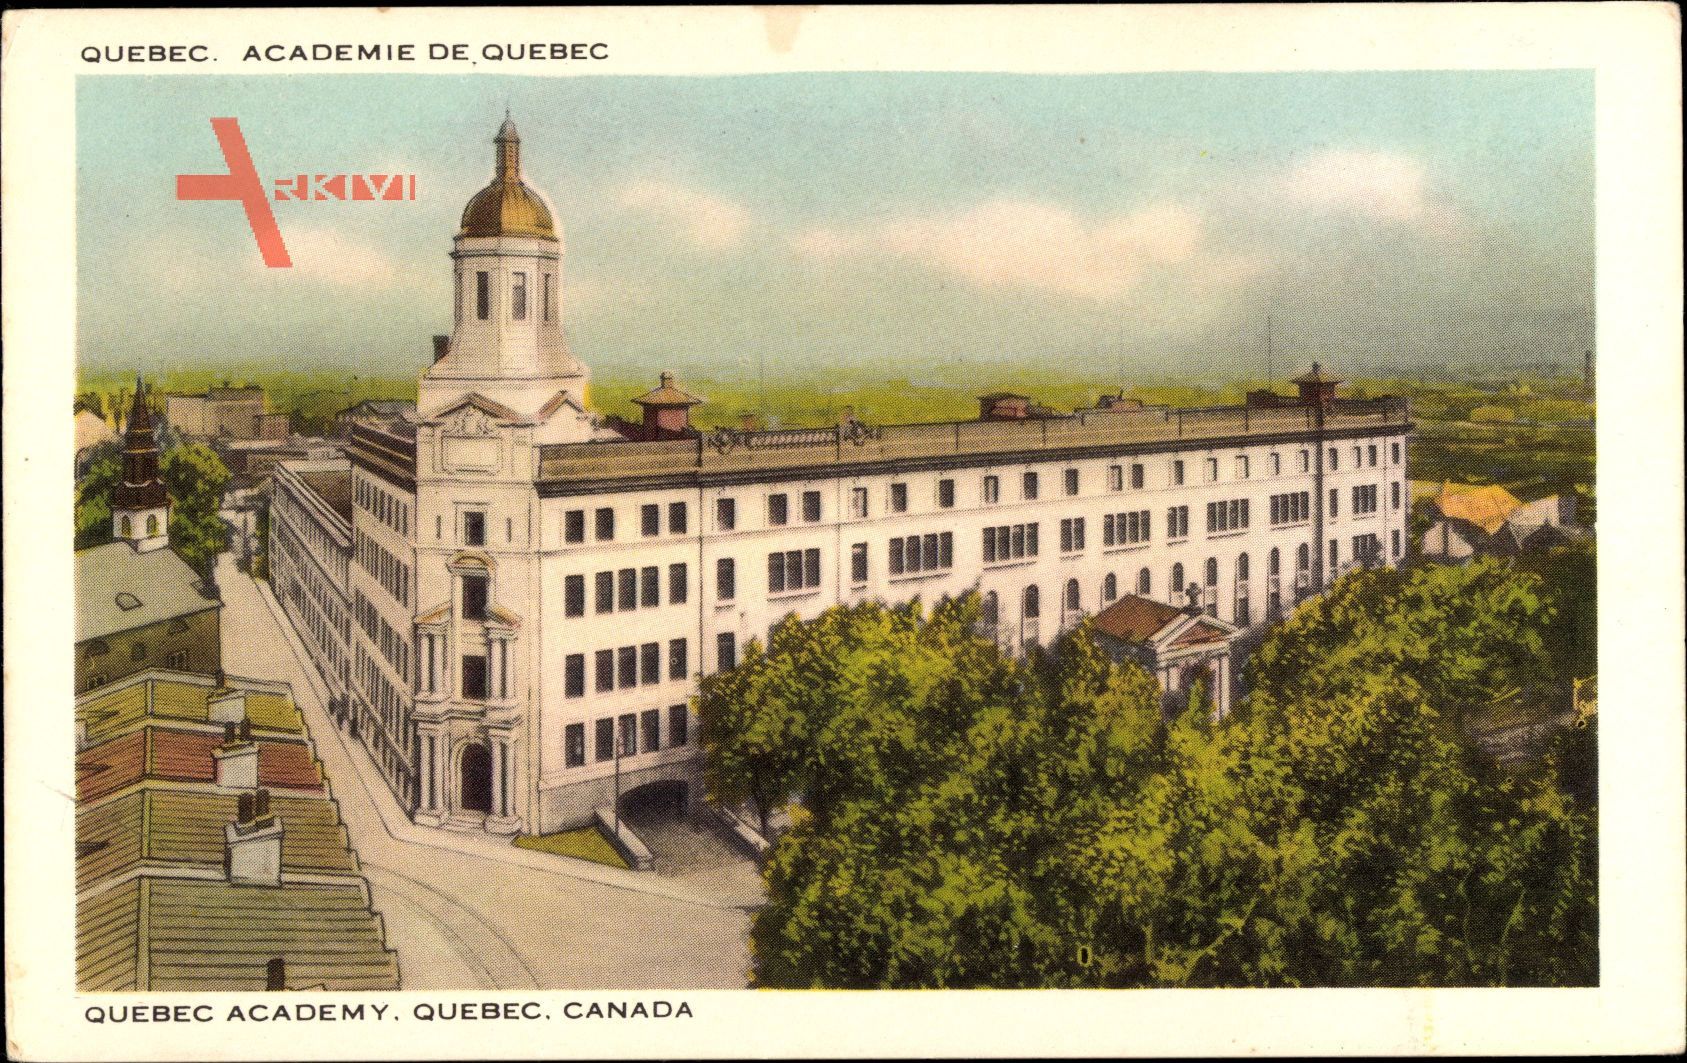 Quebec Kanada, Academie, Academy, ademie